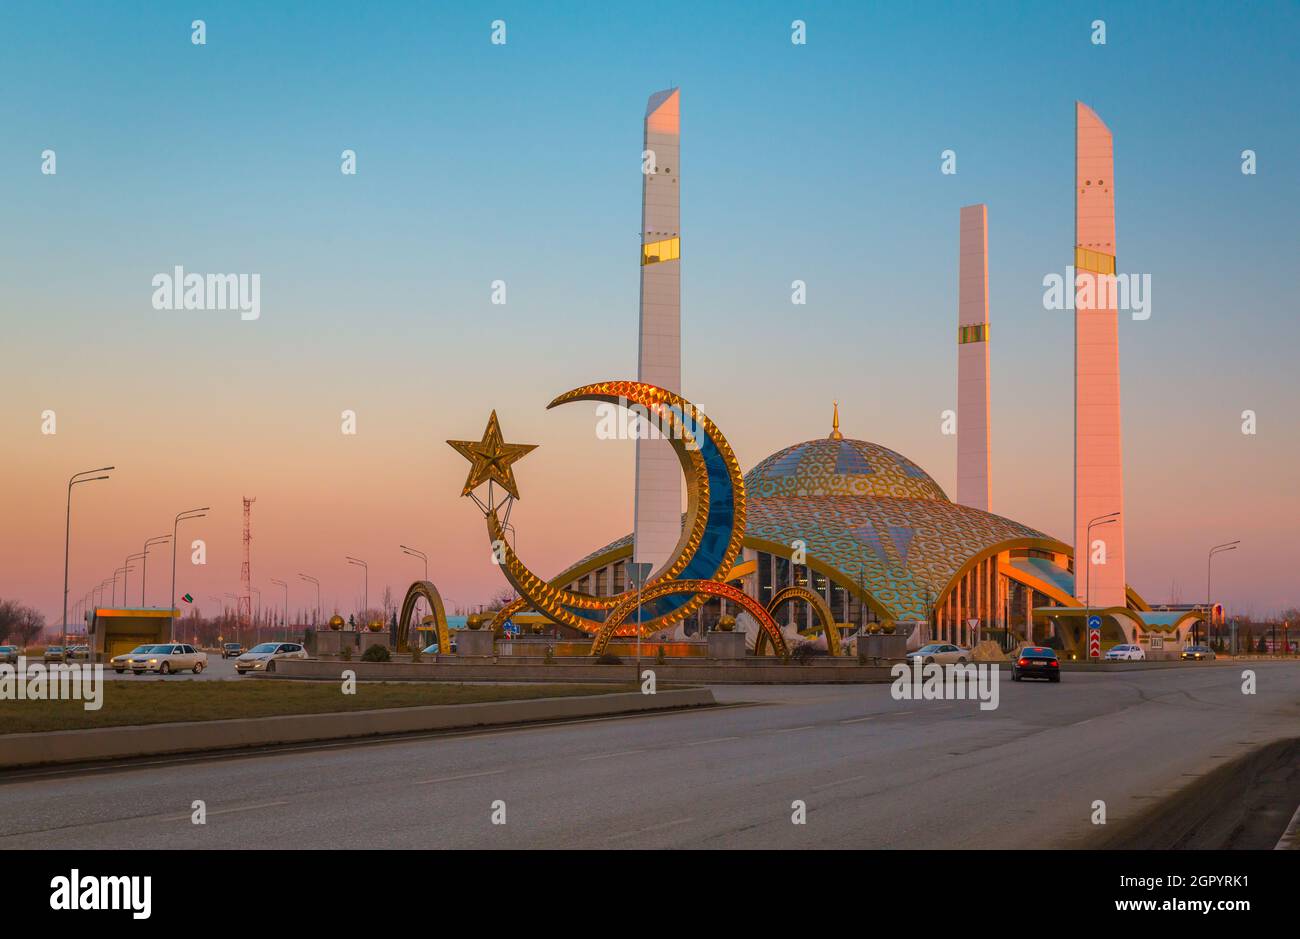 Moschee In Der Stadt Argun. Tschetschenische Republik. Riesenrad In Der Stadt Gegen Klaren Himmel Bei Sonnenuntergang Stockfoto